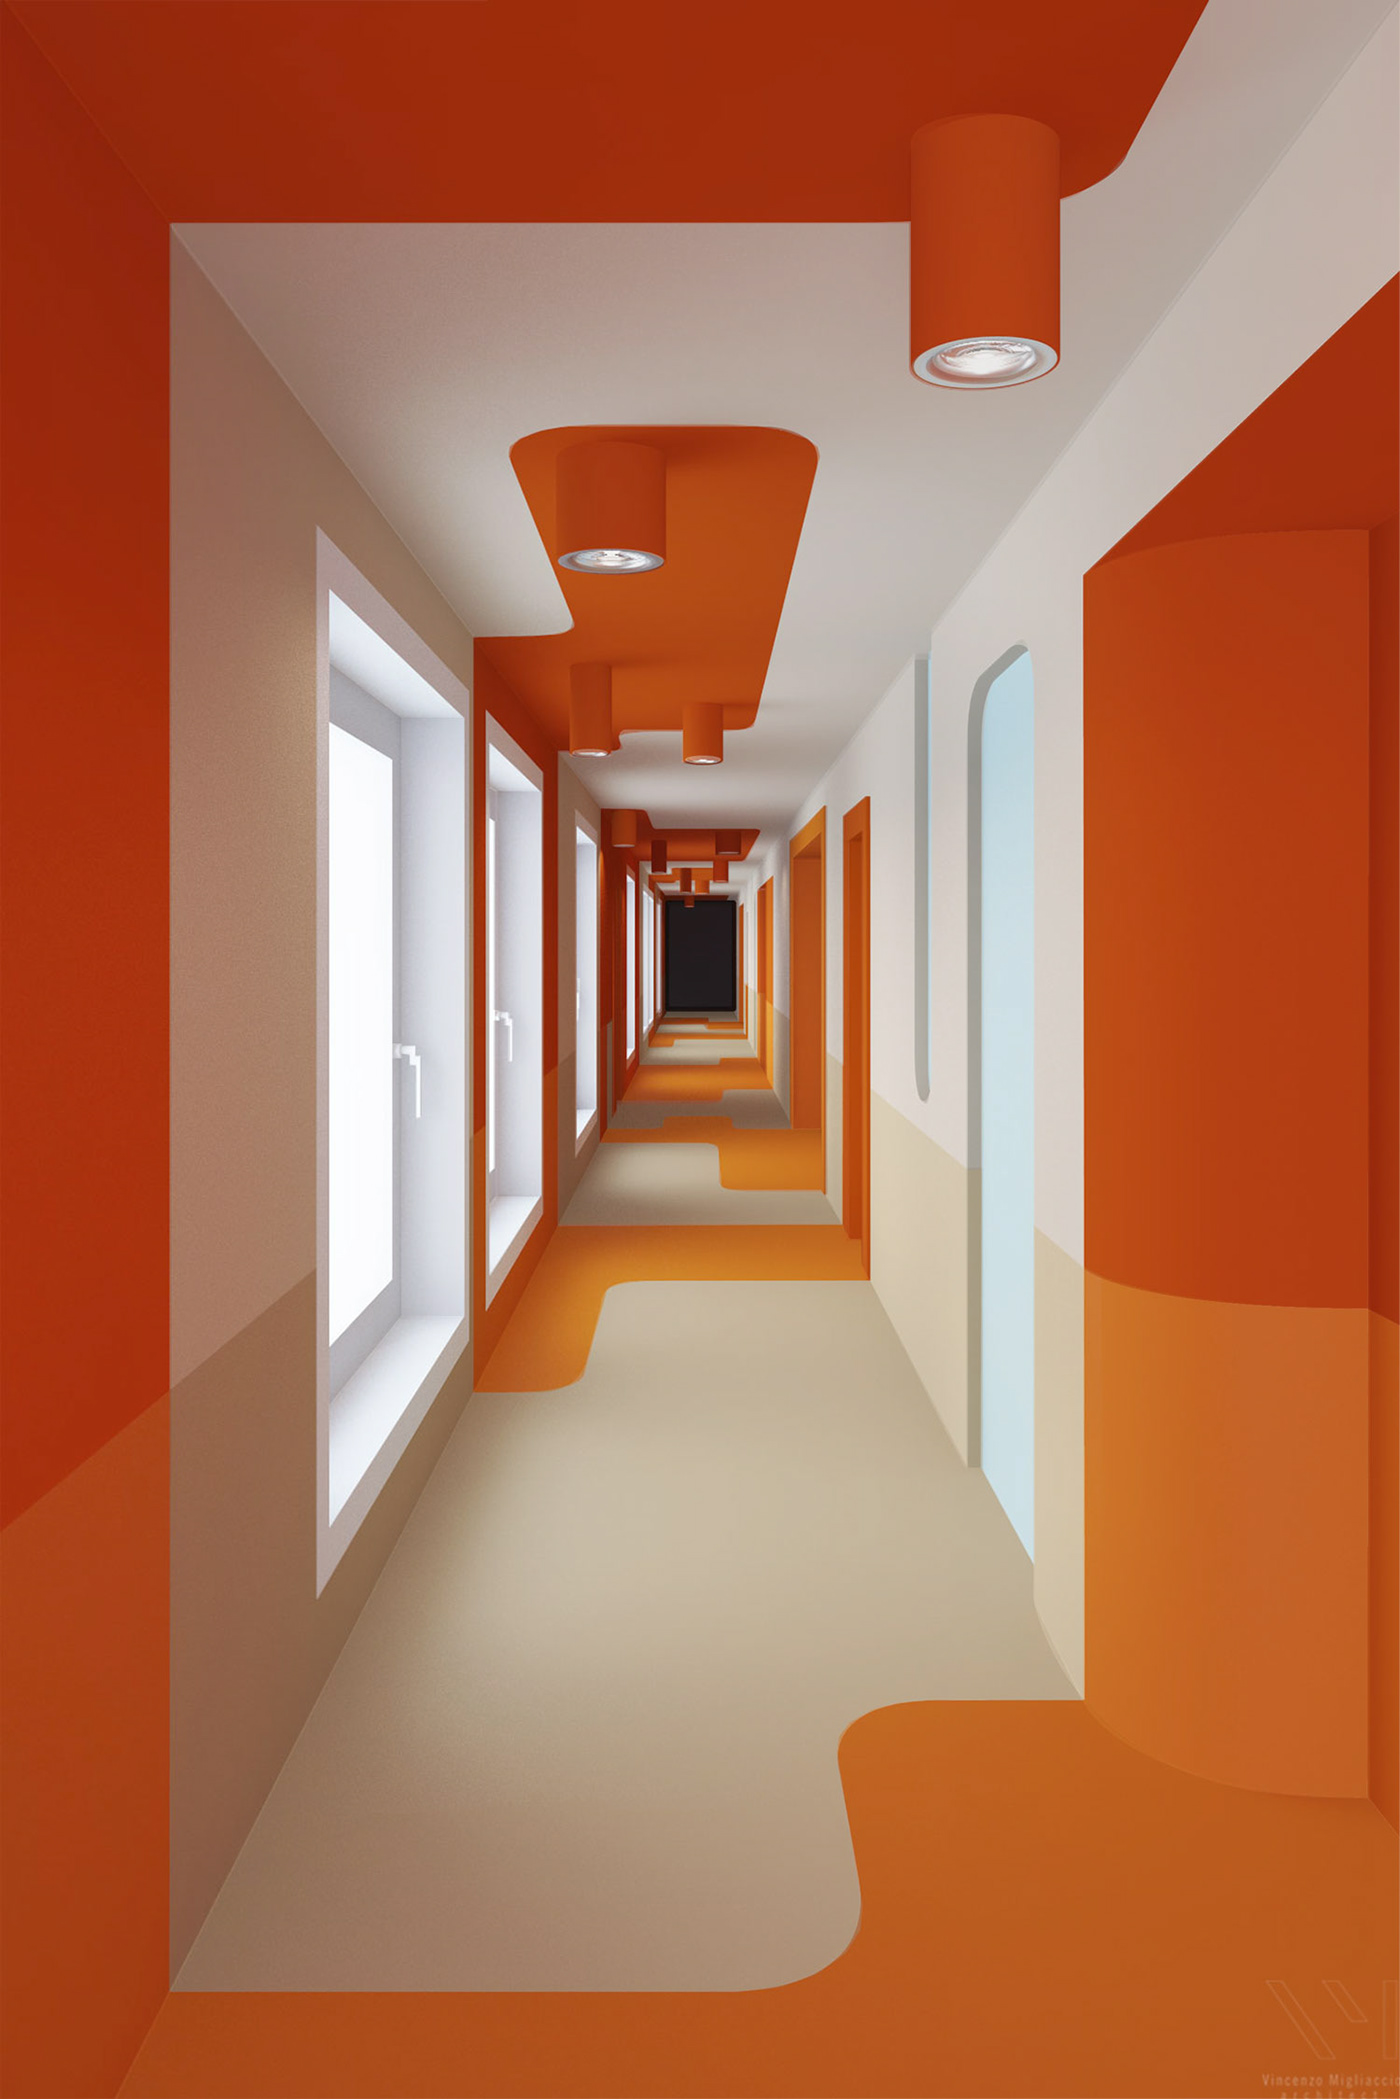 architecture graphic Illustrator corridor orange design